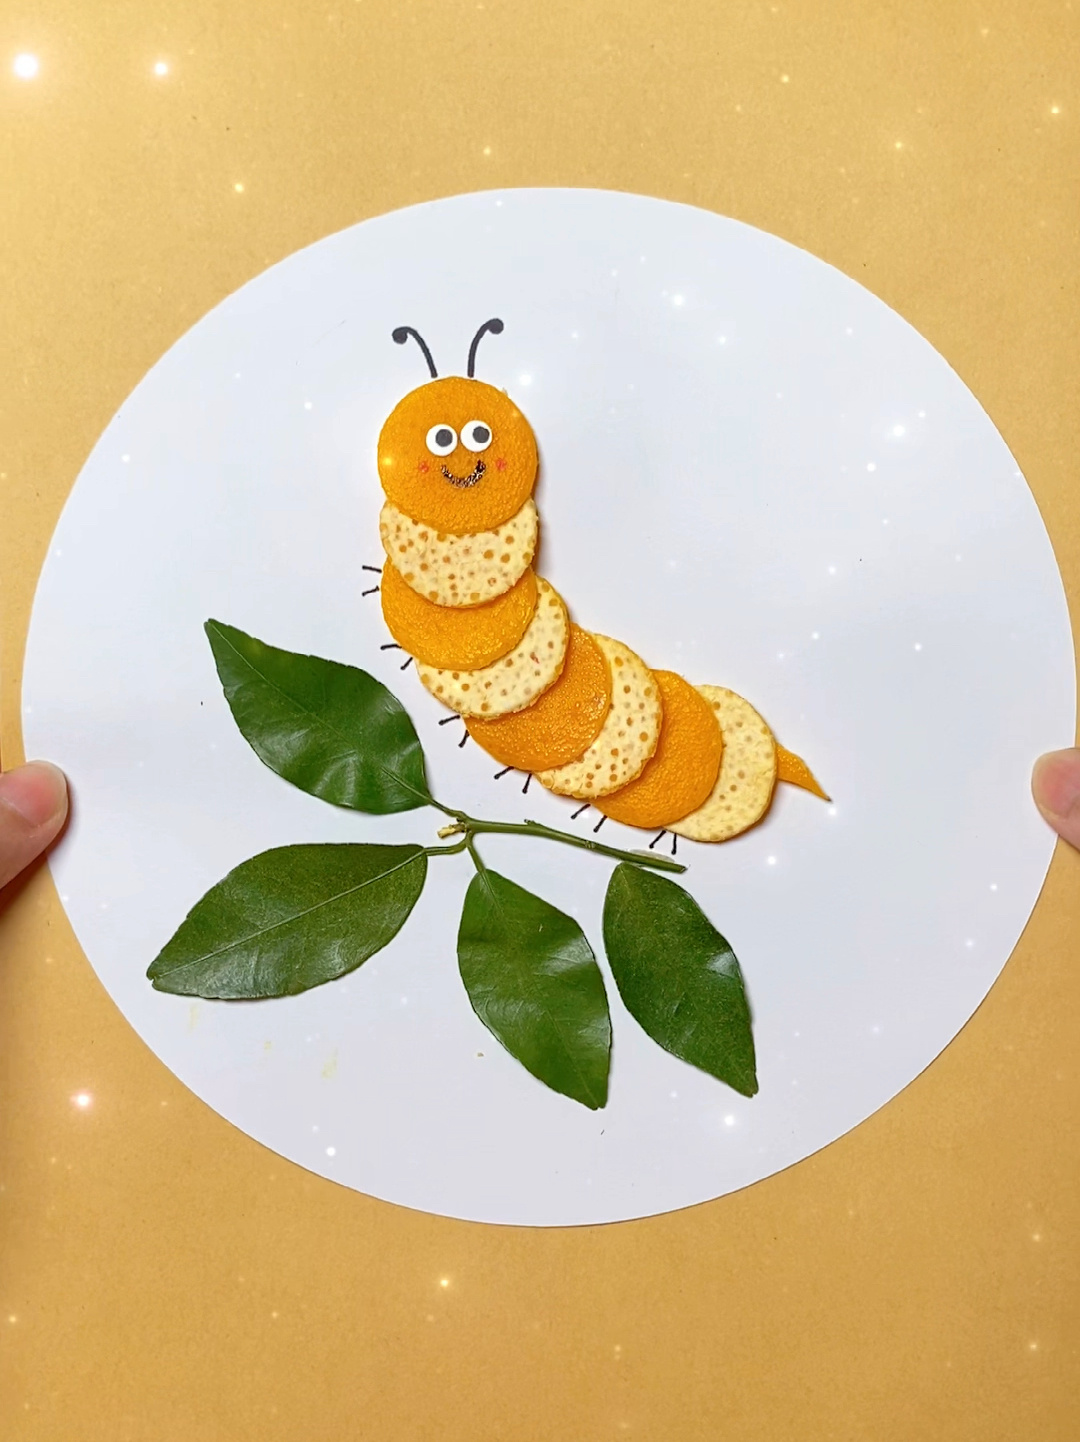 用橘子皮做一幅简单好看的小虫子手工贴画